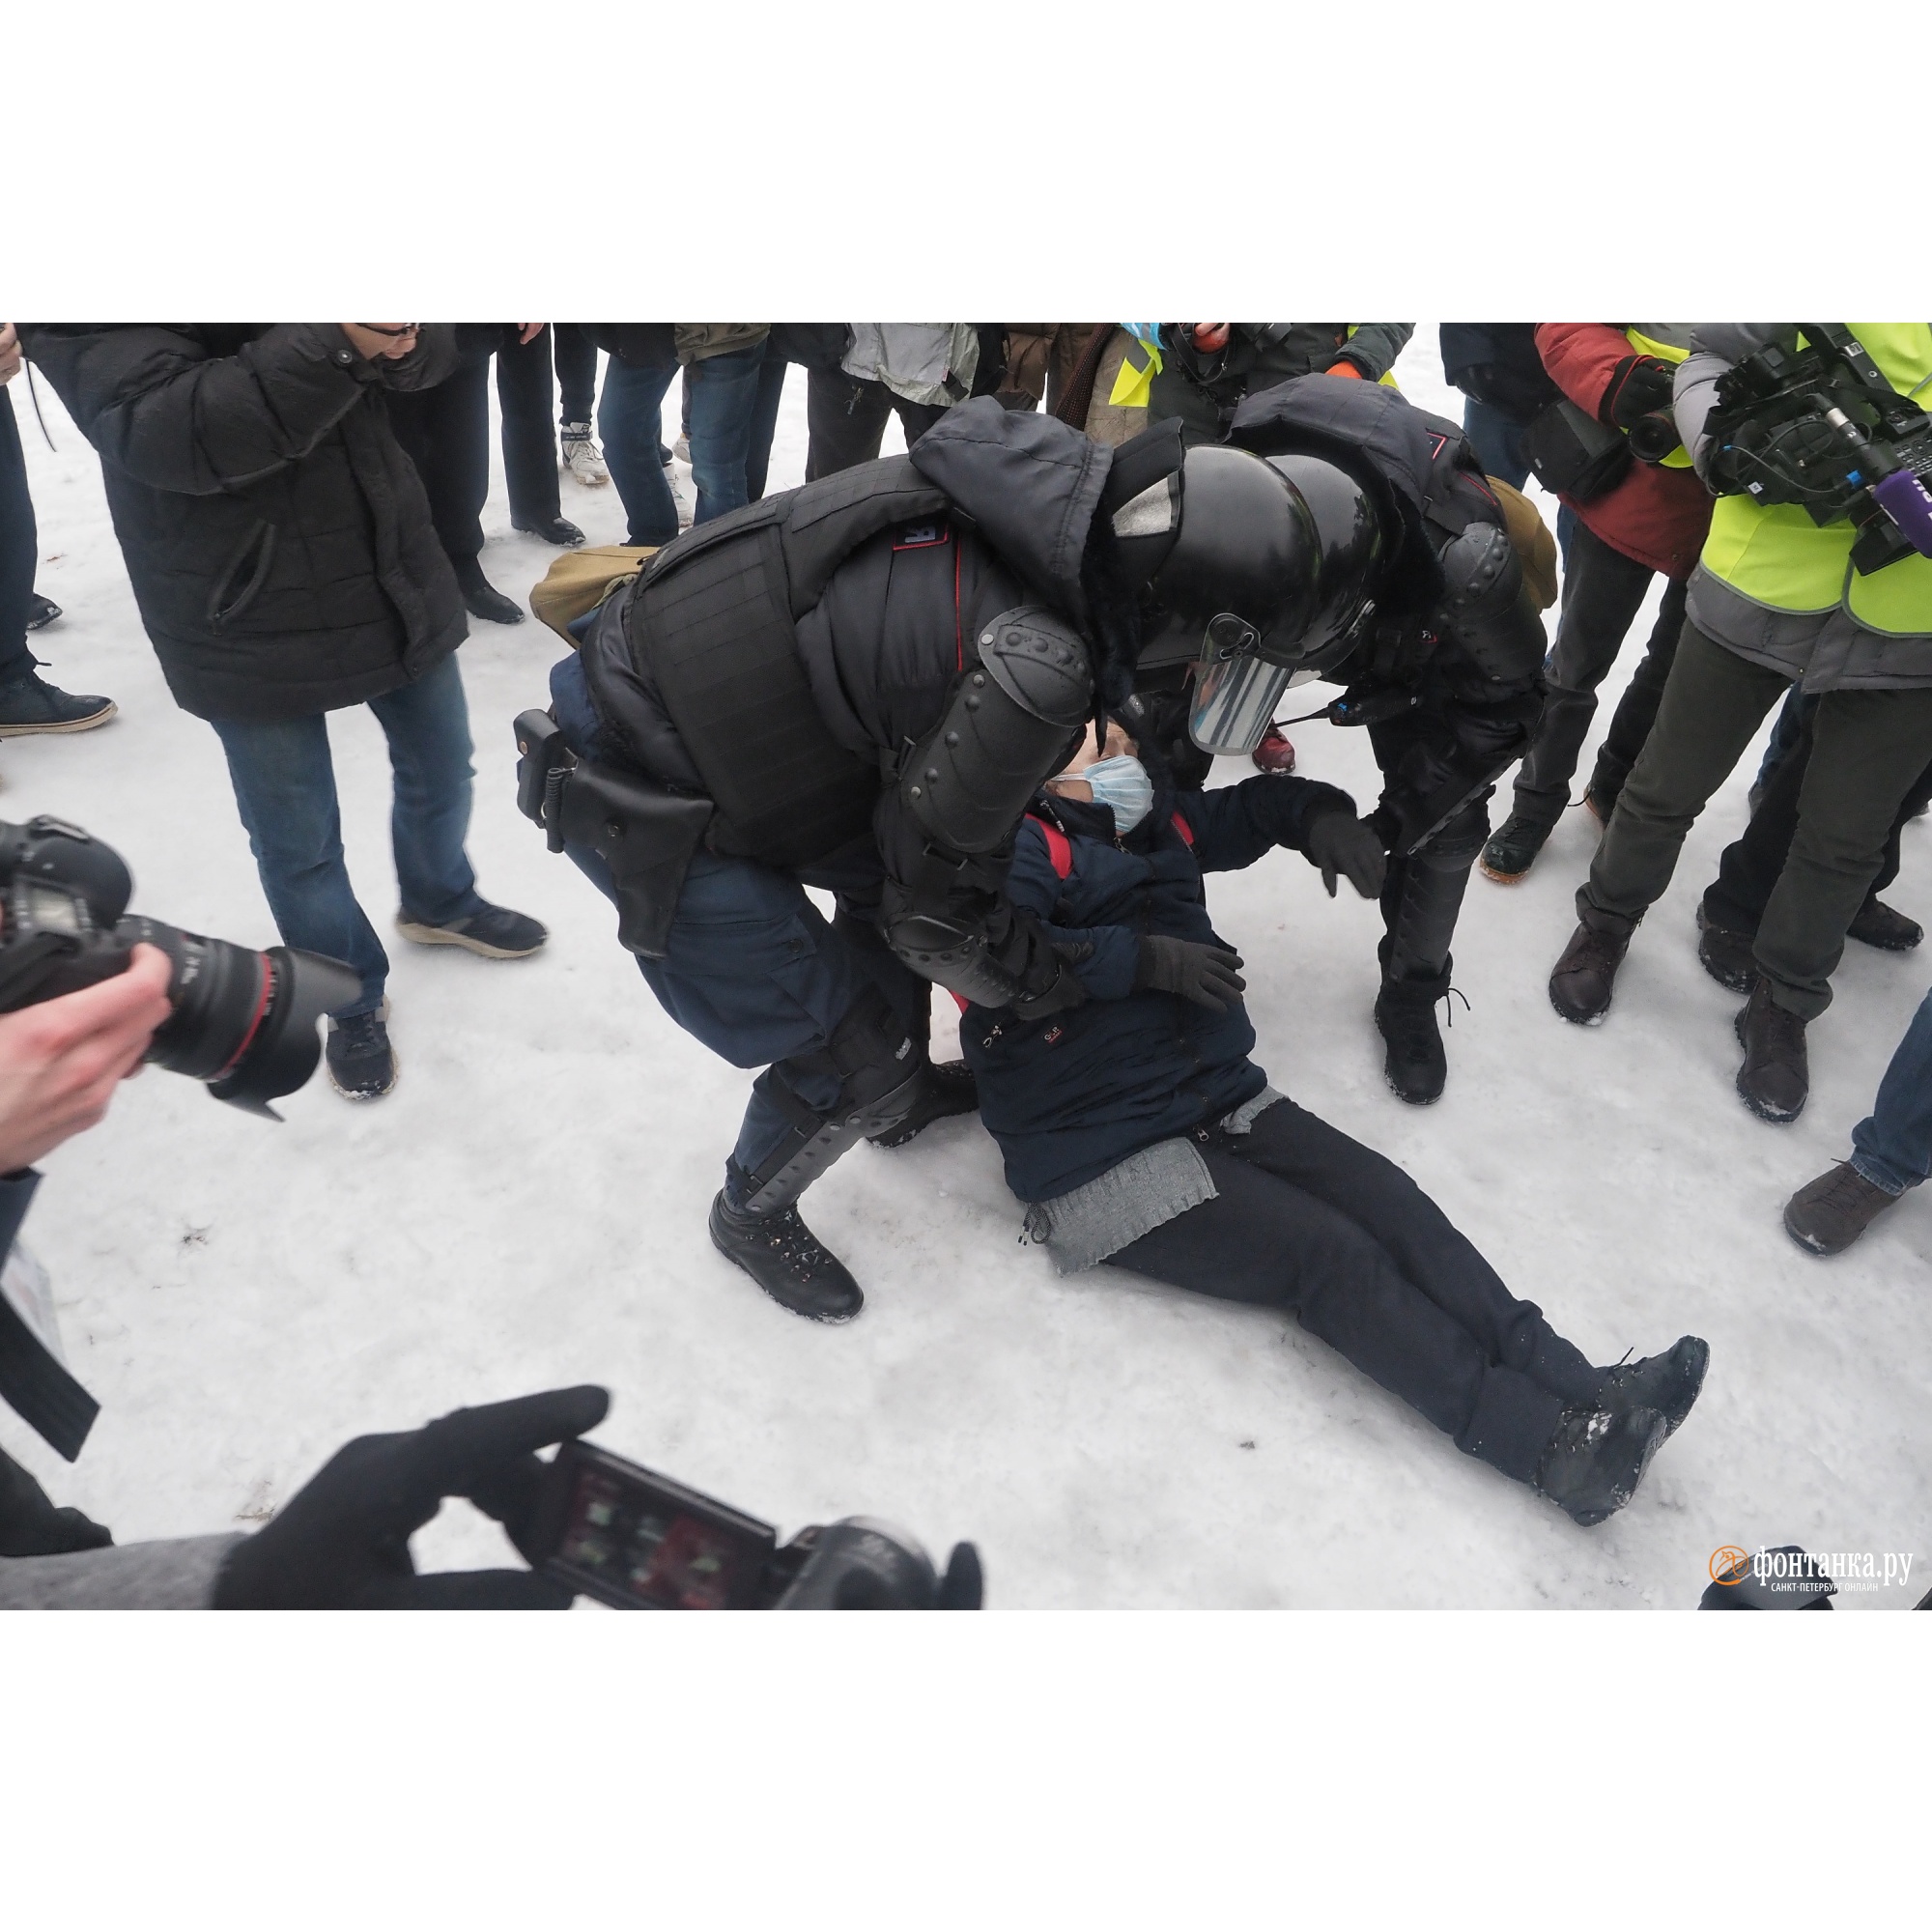 Новости сегодня последние эх. Задержания протесты 23 января 2021. Последние новости Петербурга. Жесткие кадры с протестов.